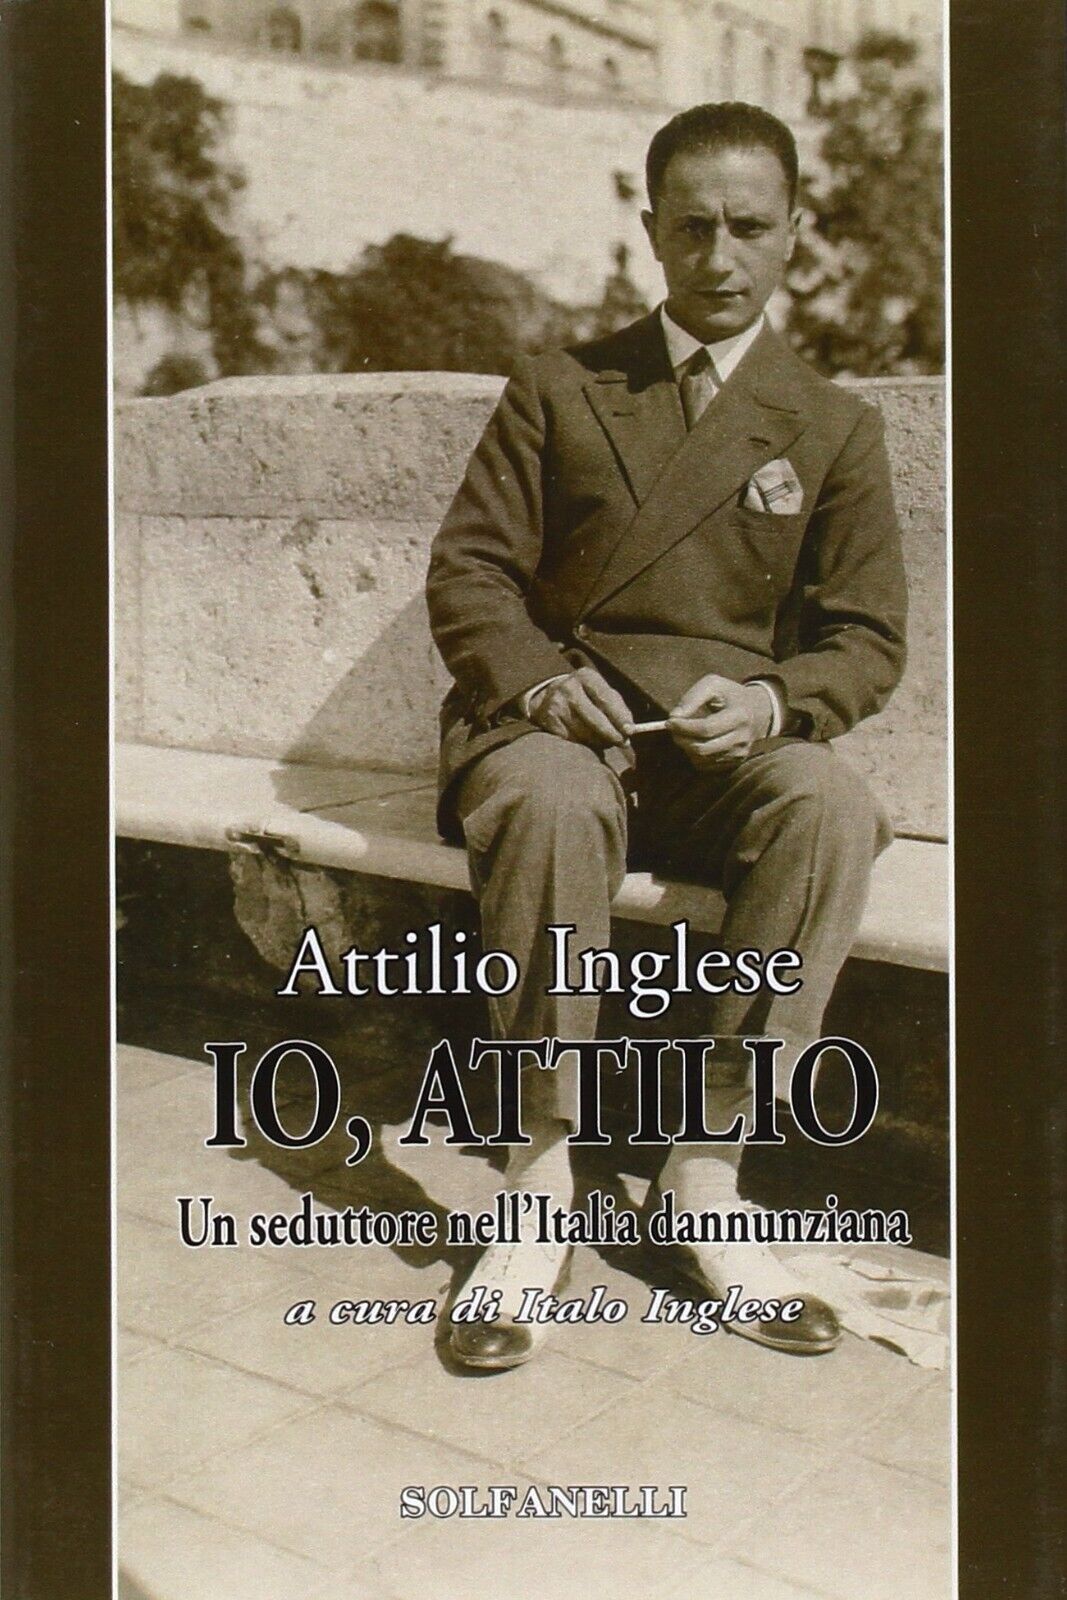  Io, Attilio un seduttore nelL'Italia dannunziana di Attilio Inglese, 2010, S